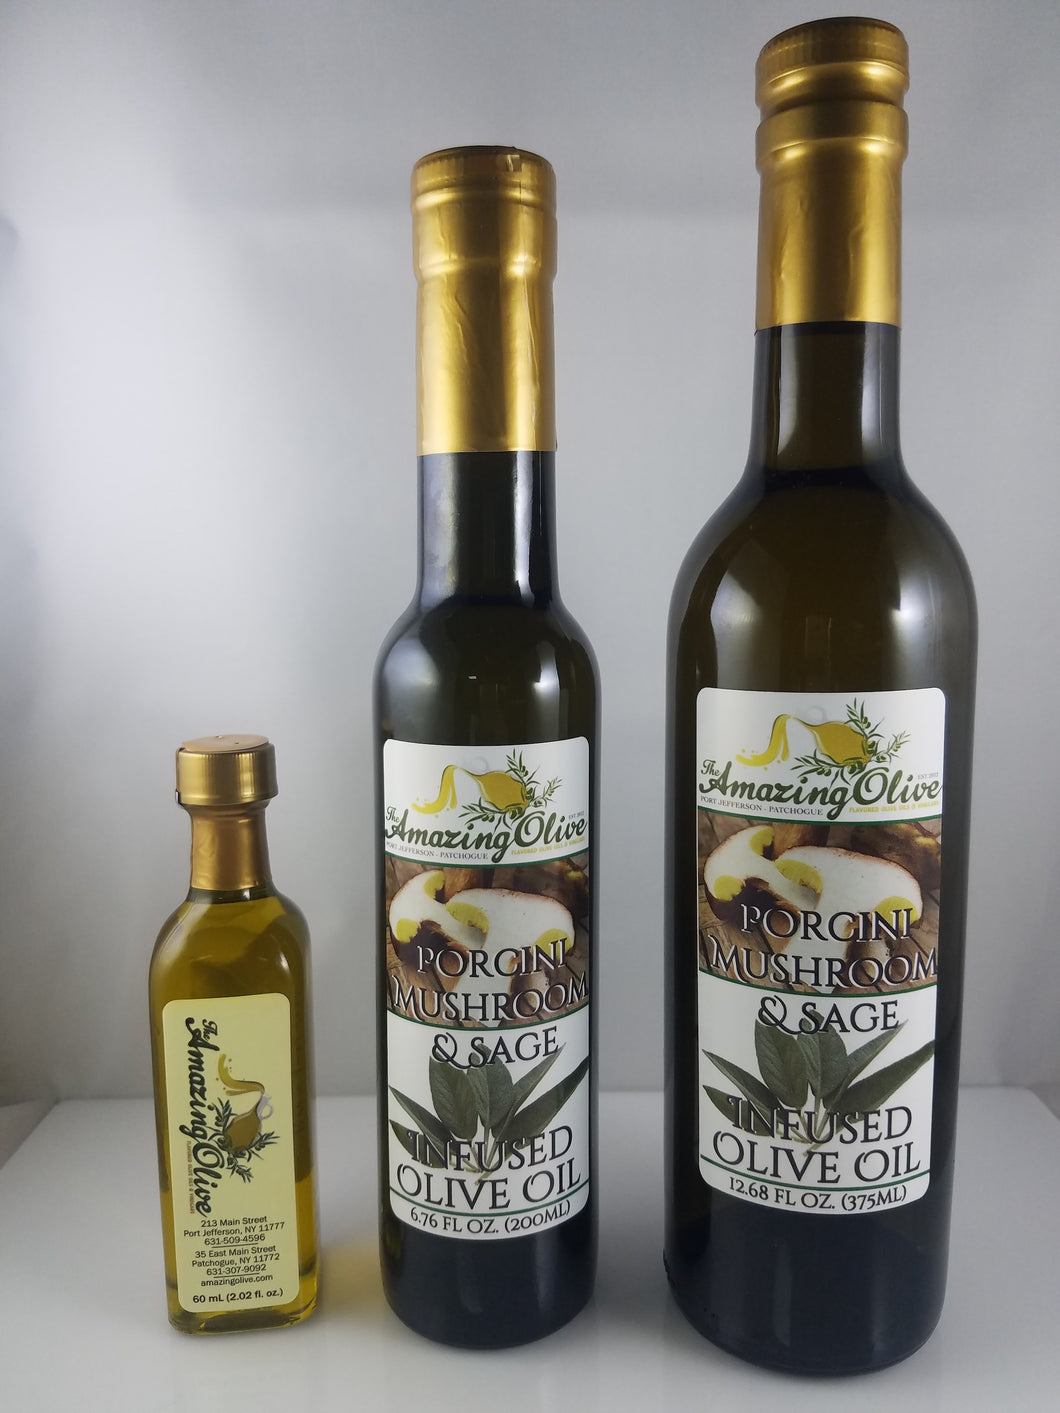 Porcini Mushroom & Sage Infused Olive Oil